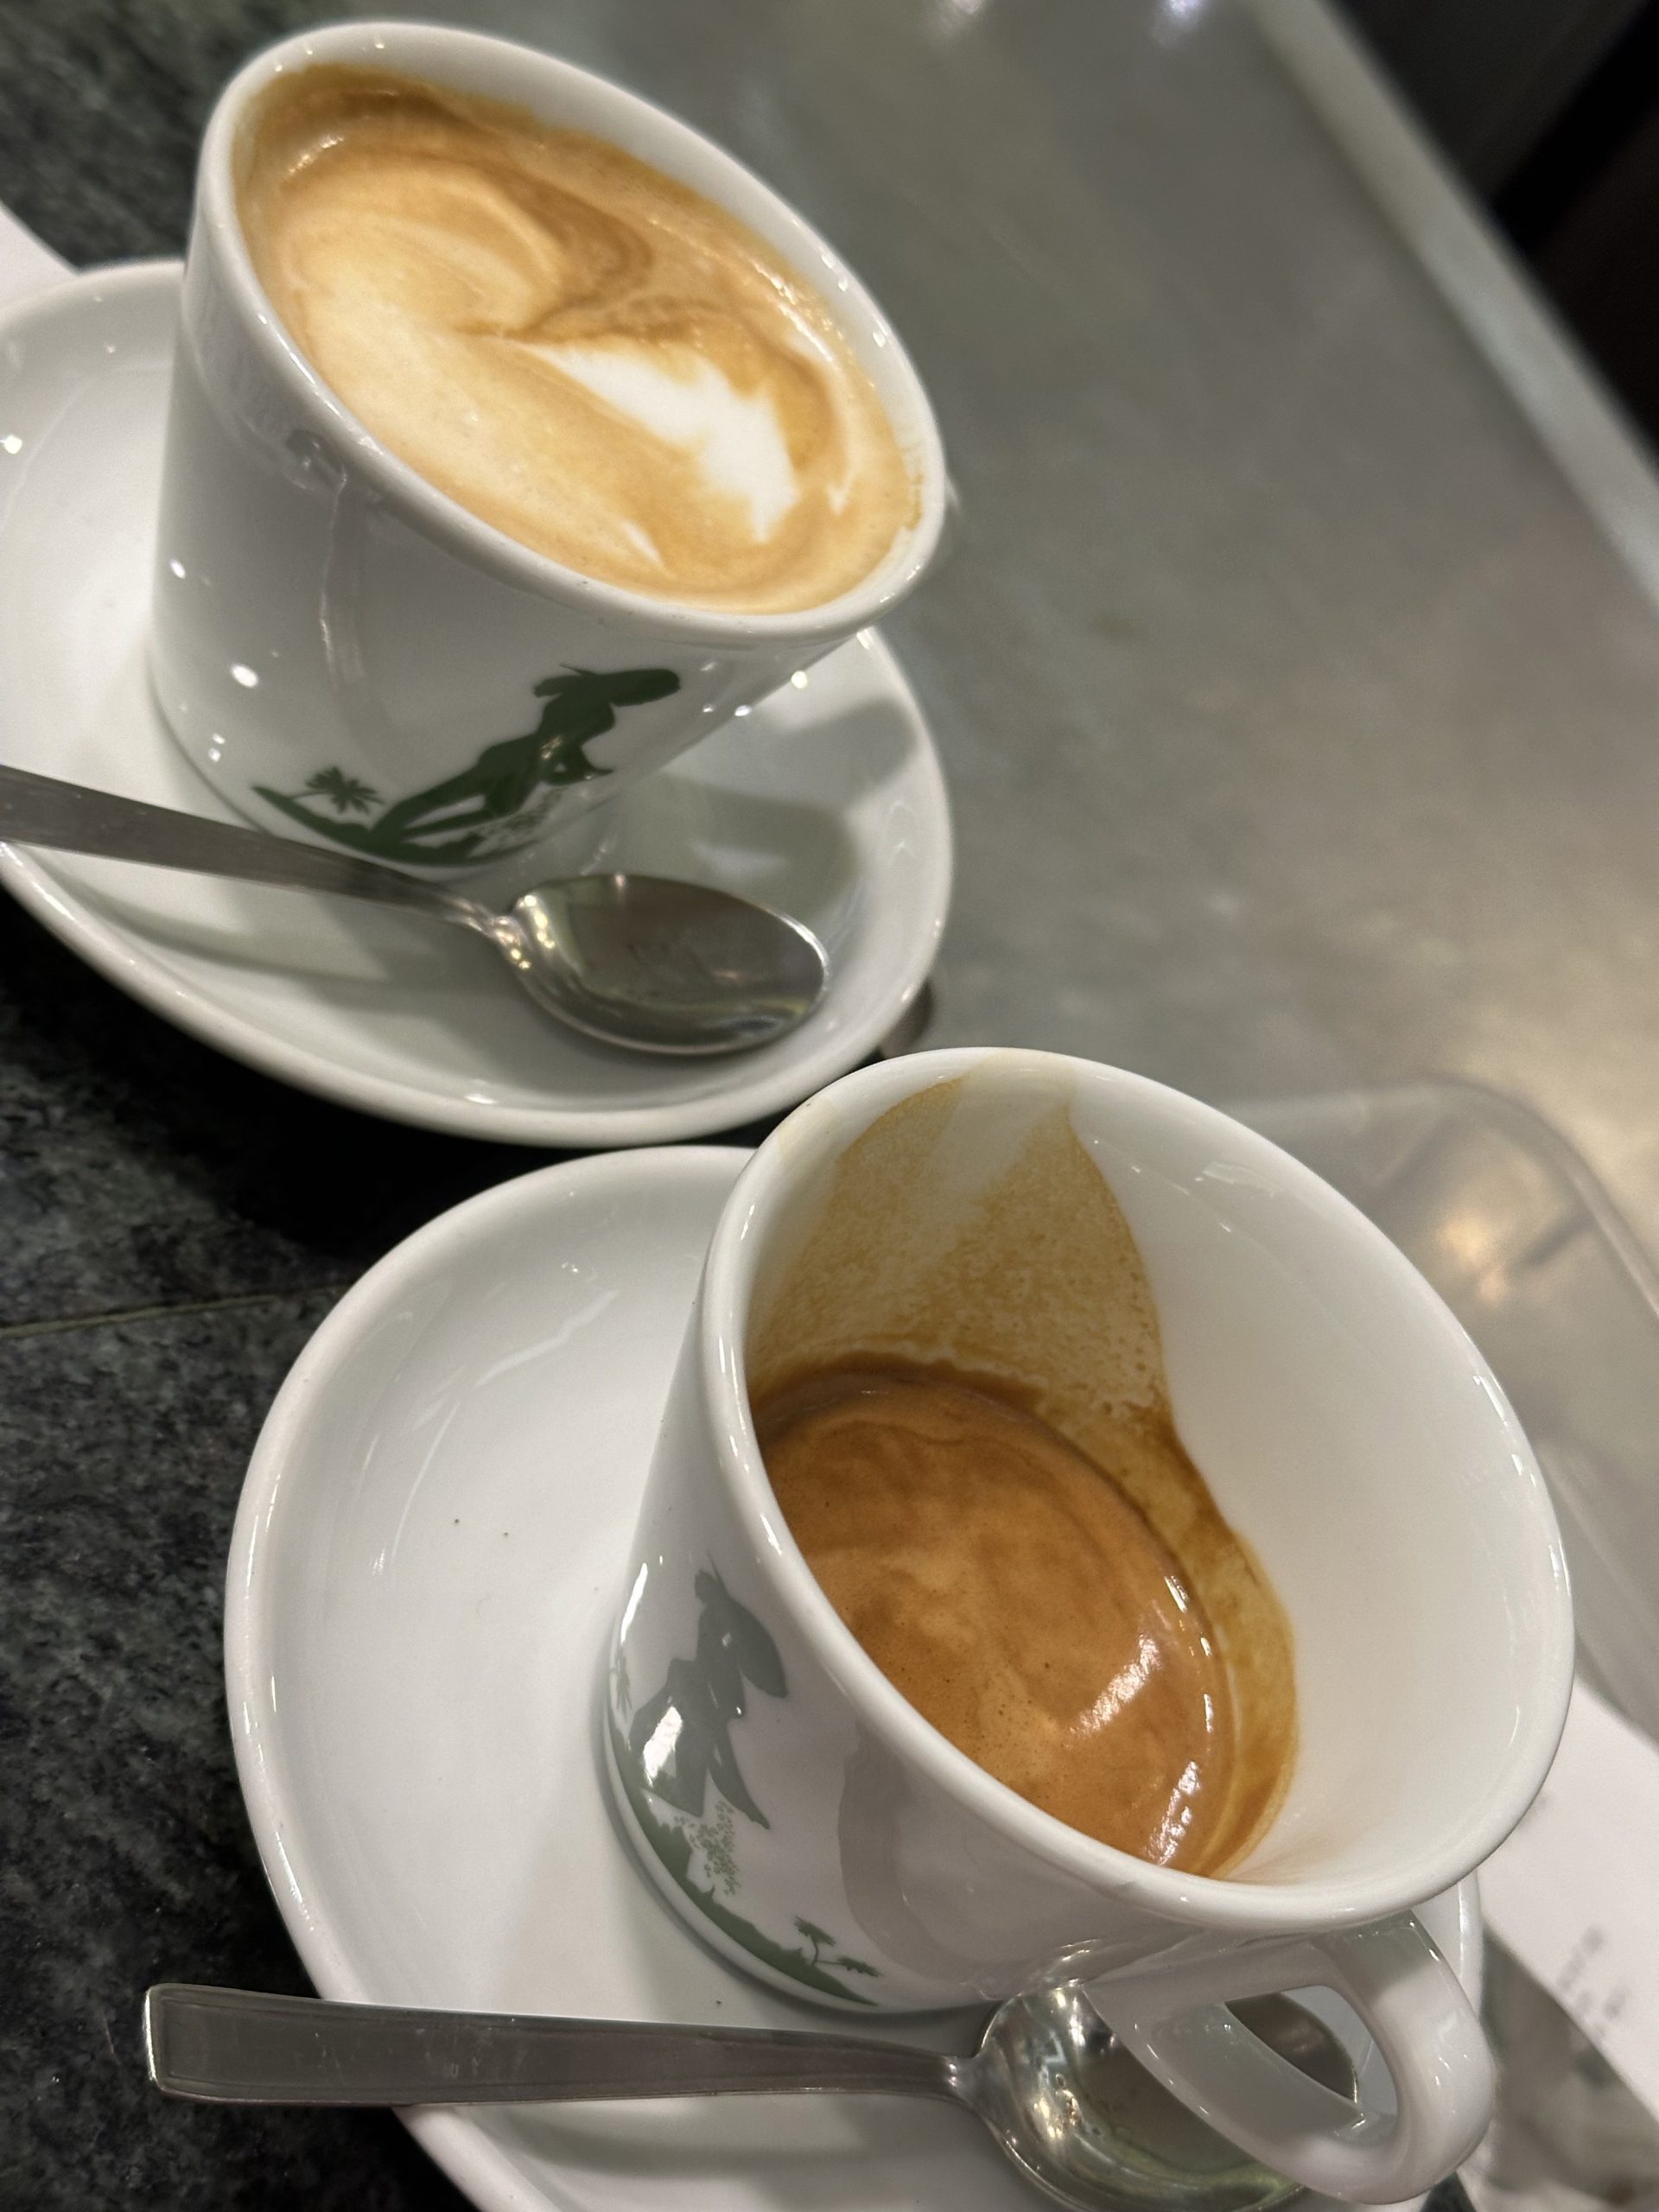 金杯咖啡 義大利 羅馬 阿拉比卡 摩卡壺 手沖咖啡 Golden Cup Coffee Italy Rome Arabica Moka Pot Hand-brewed Coffee